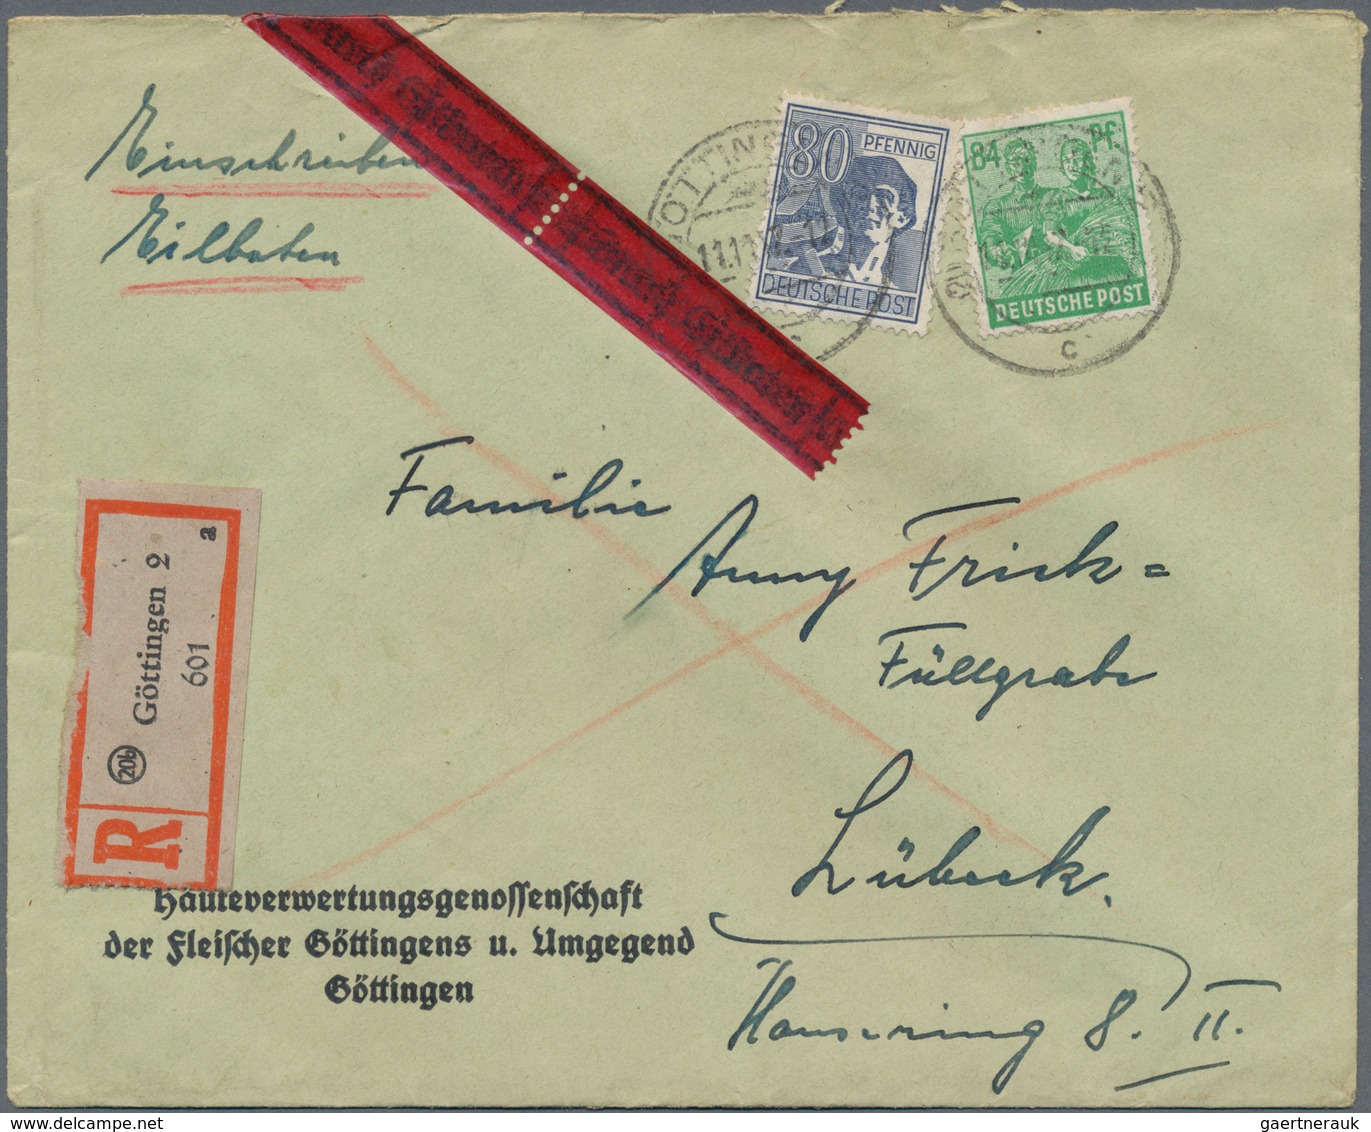 Deutschland: 1920-1960, großer Karton mit mehreren tausend Briefen und Ganzsachen, dabei neben einfa